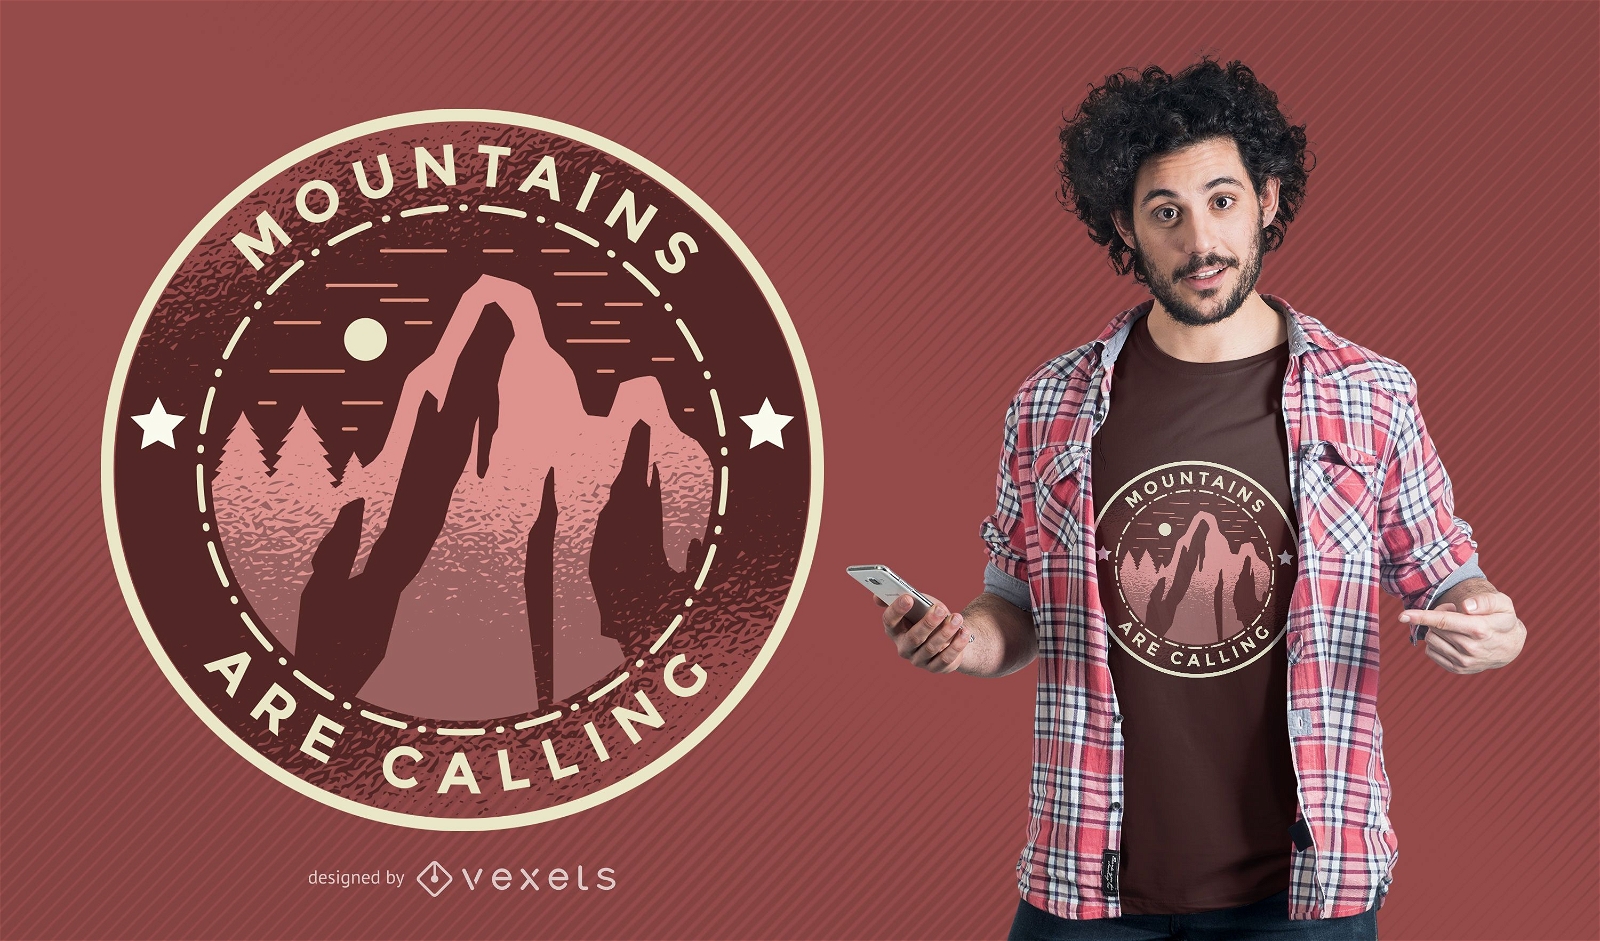 Dise?o de camiseta Mountains Calling